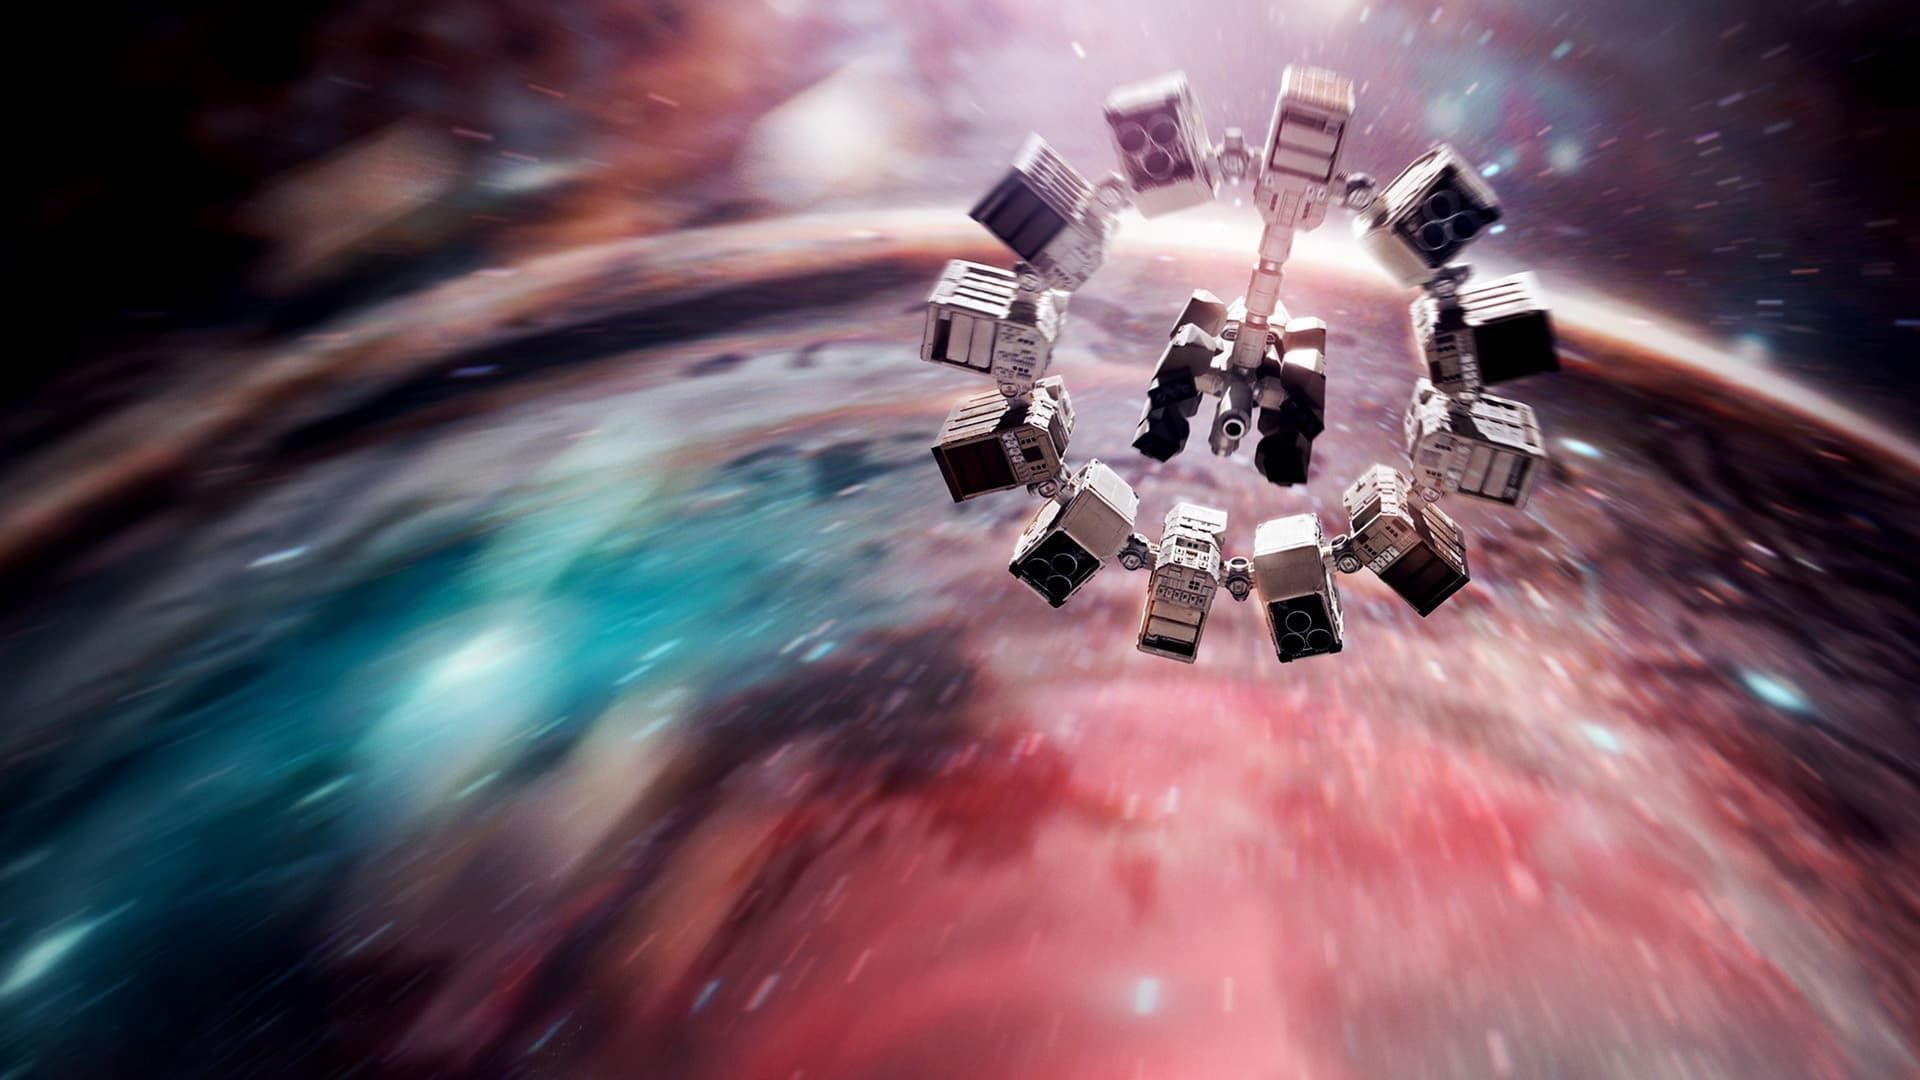 Inside 'Interstellar' background